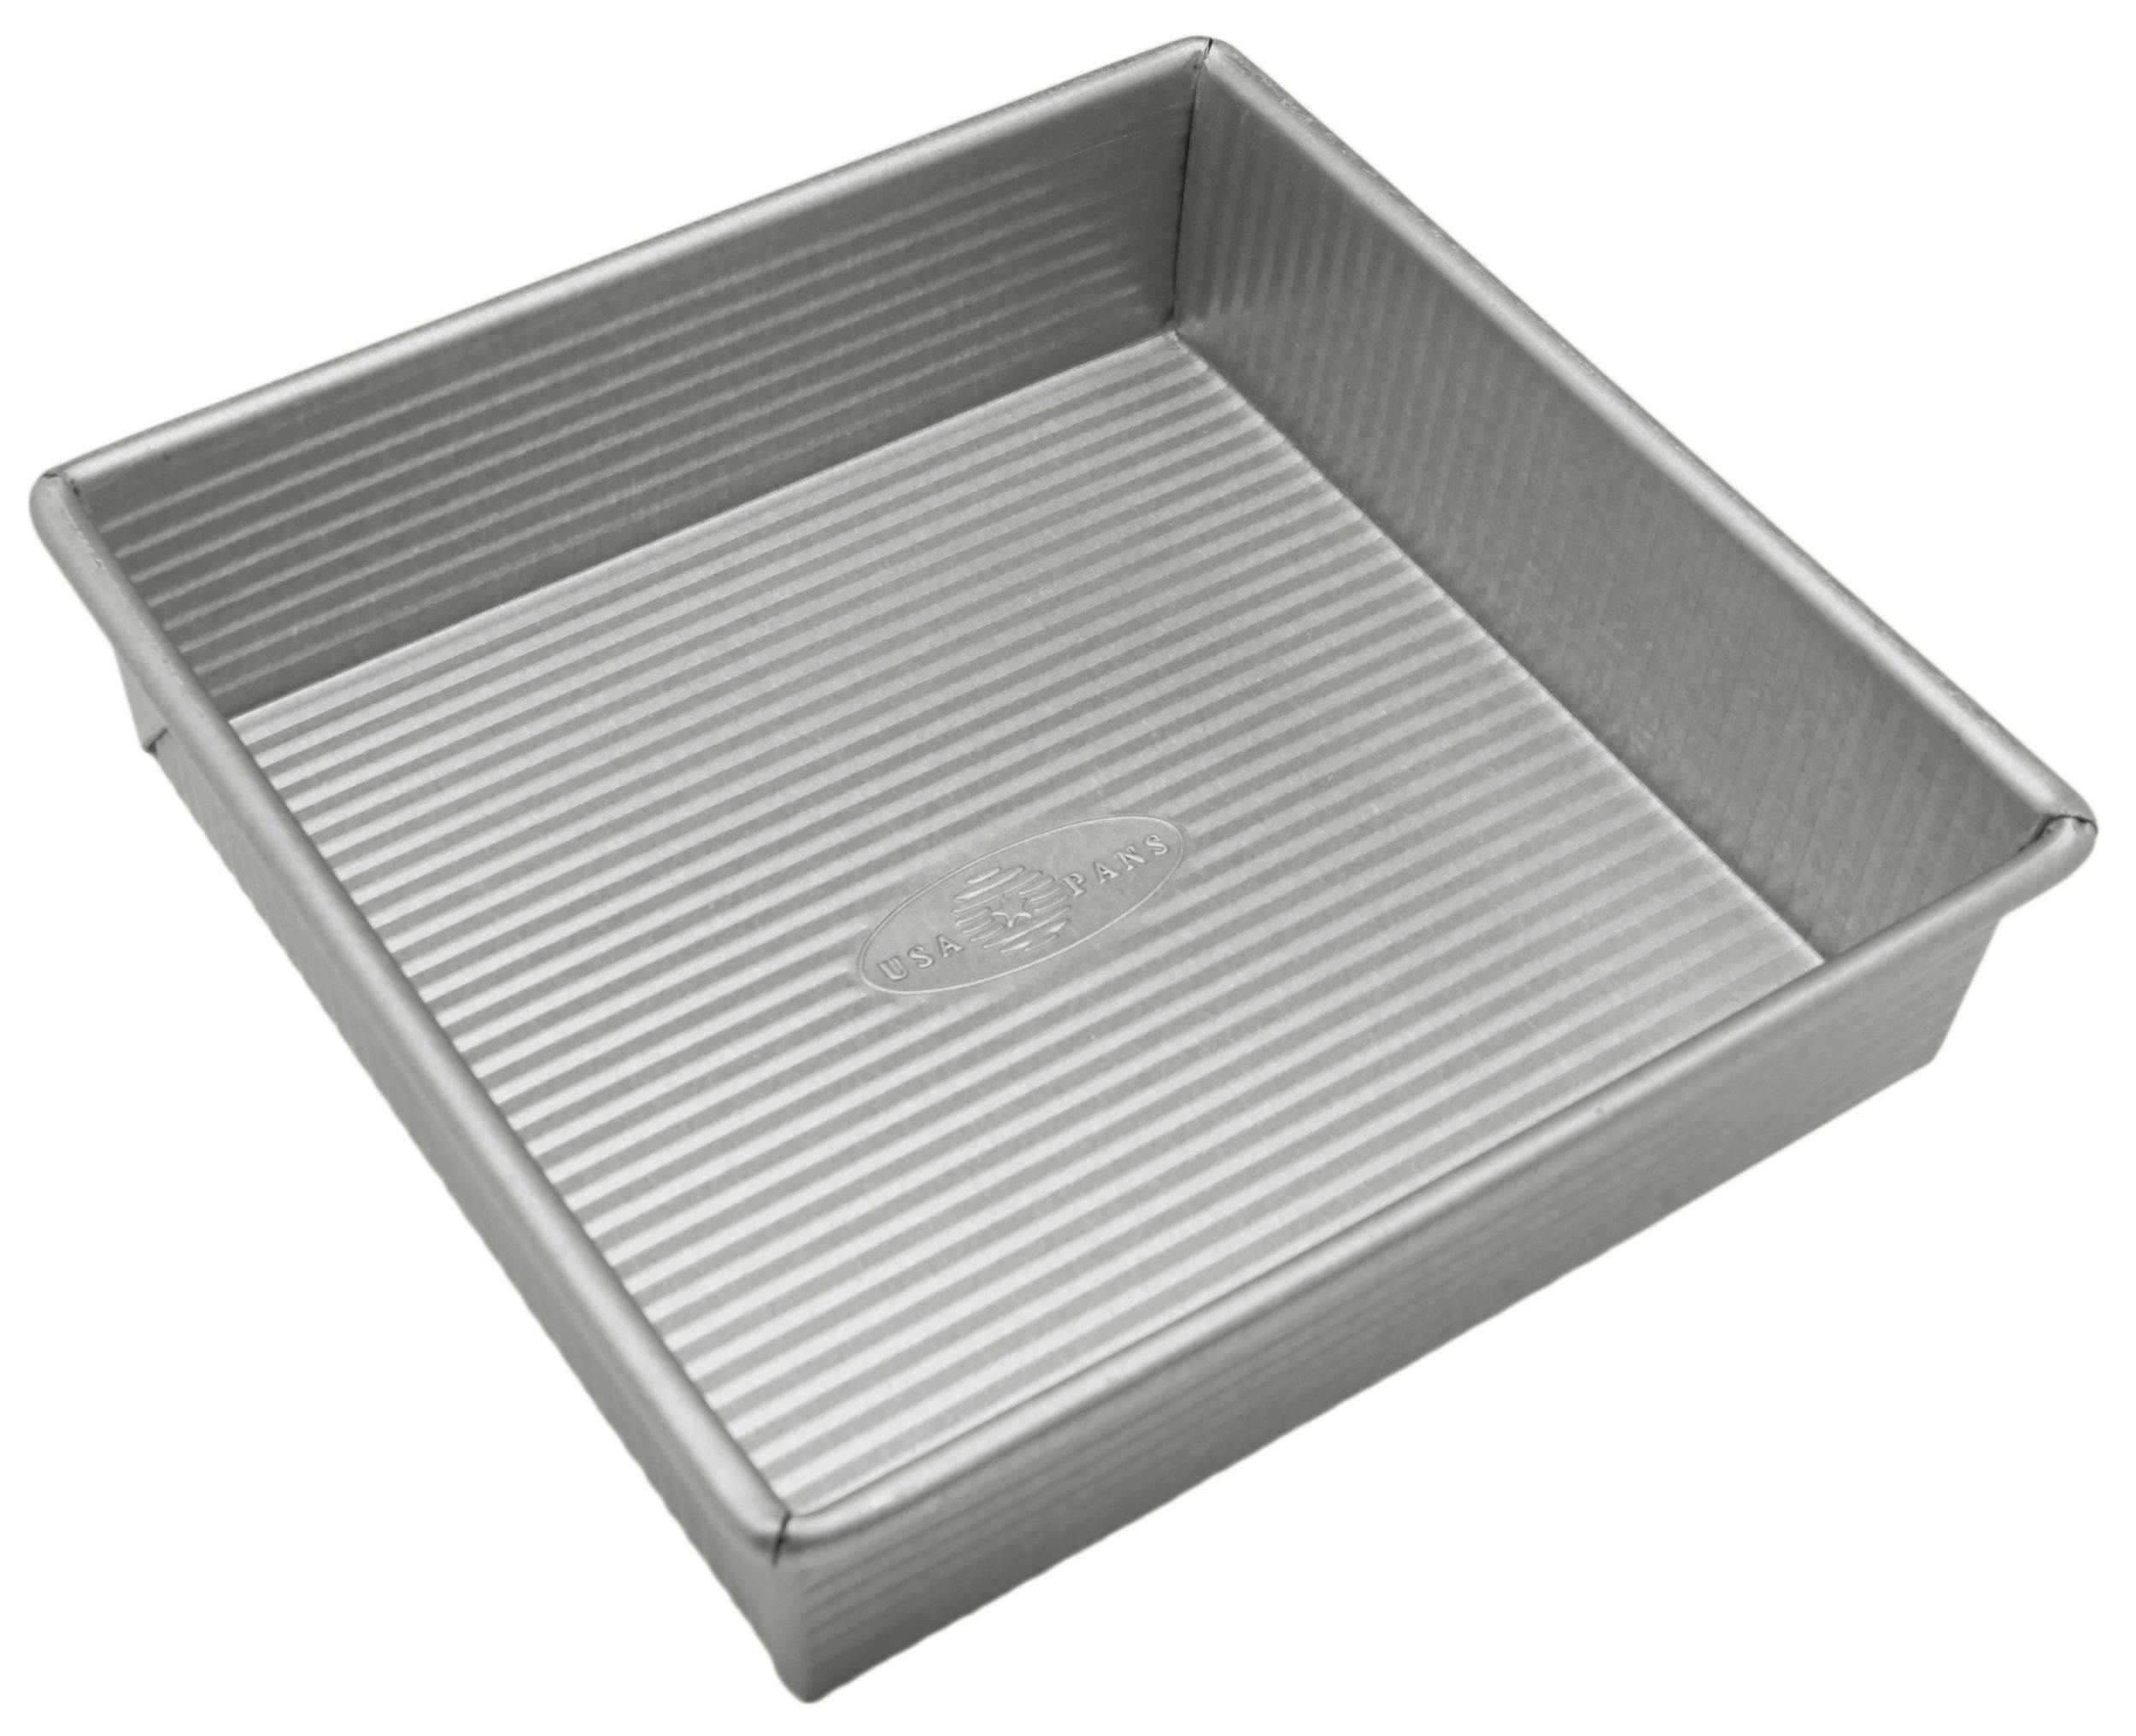 Squared  inch baking pan